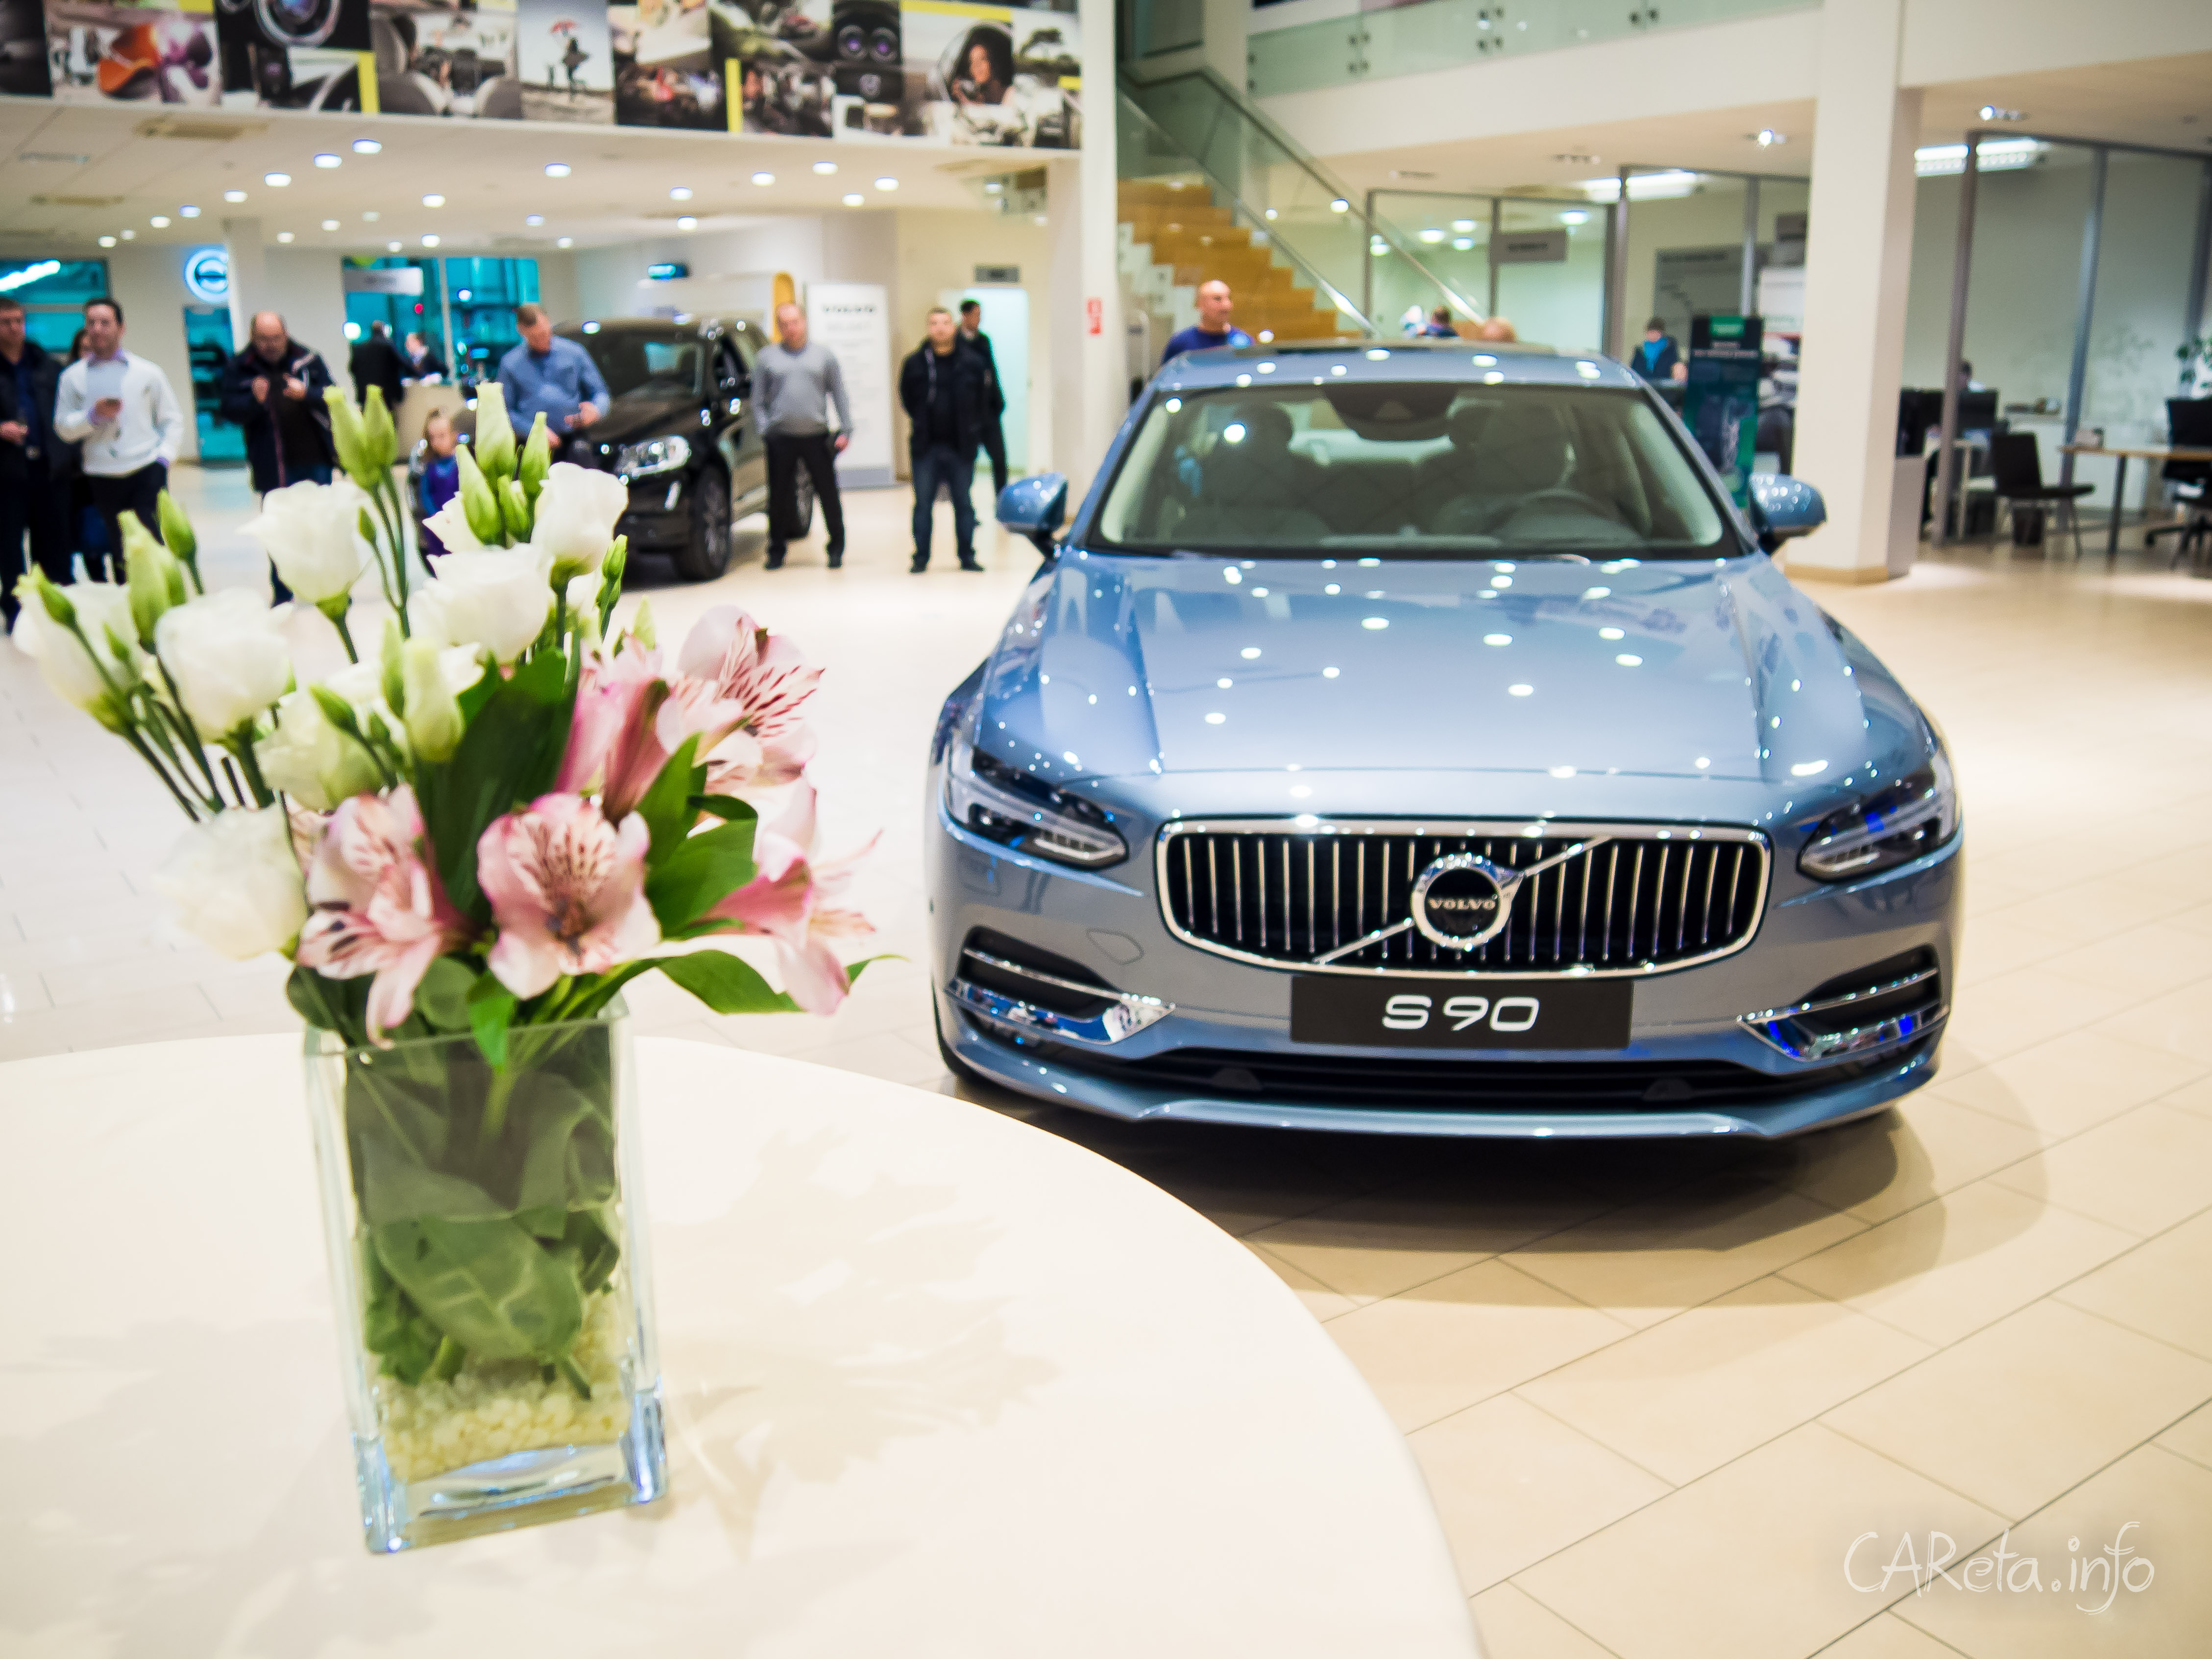 Новый флагман Volvo: еще одна презентация S90 и китайские перспективы роскоши